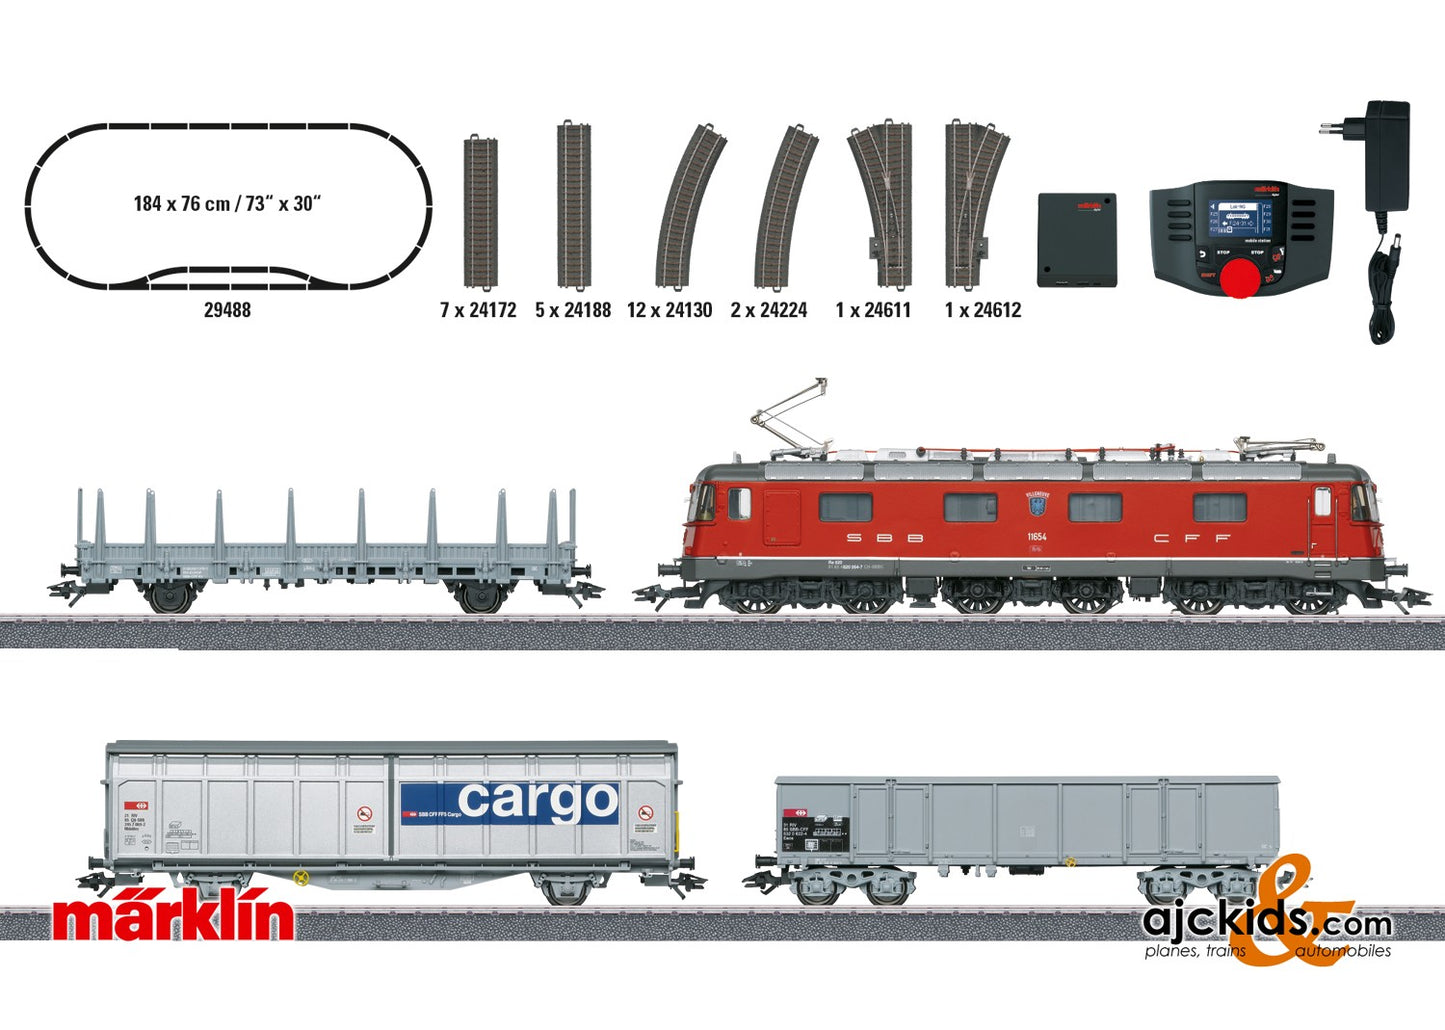 Marklin 29488 - Swiss Freight Train with a Class Re 620 Digital Starter Set, EAN 4001883294889 at Ajckids.com